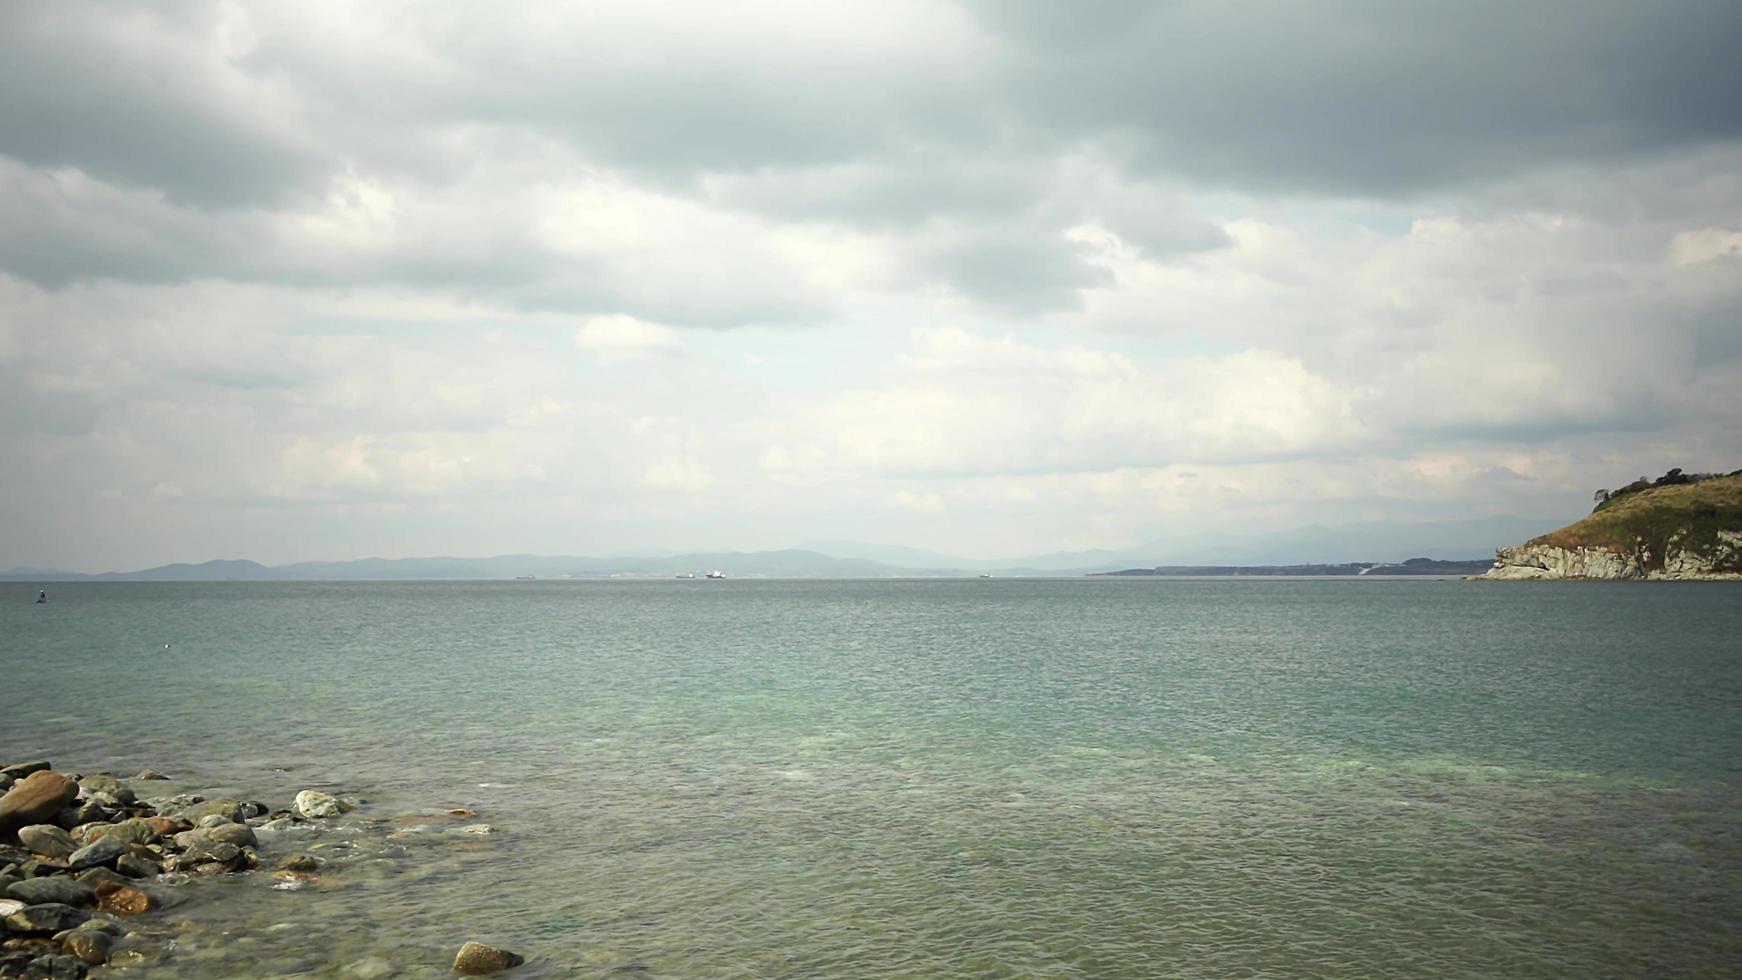 paisagem marinha com praia rochosa e mar límpido foto